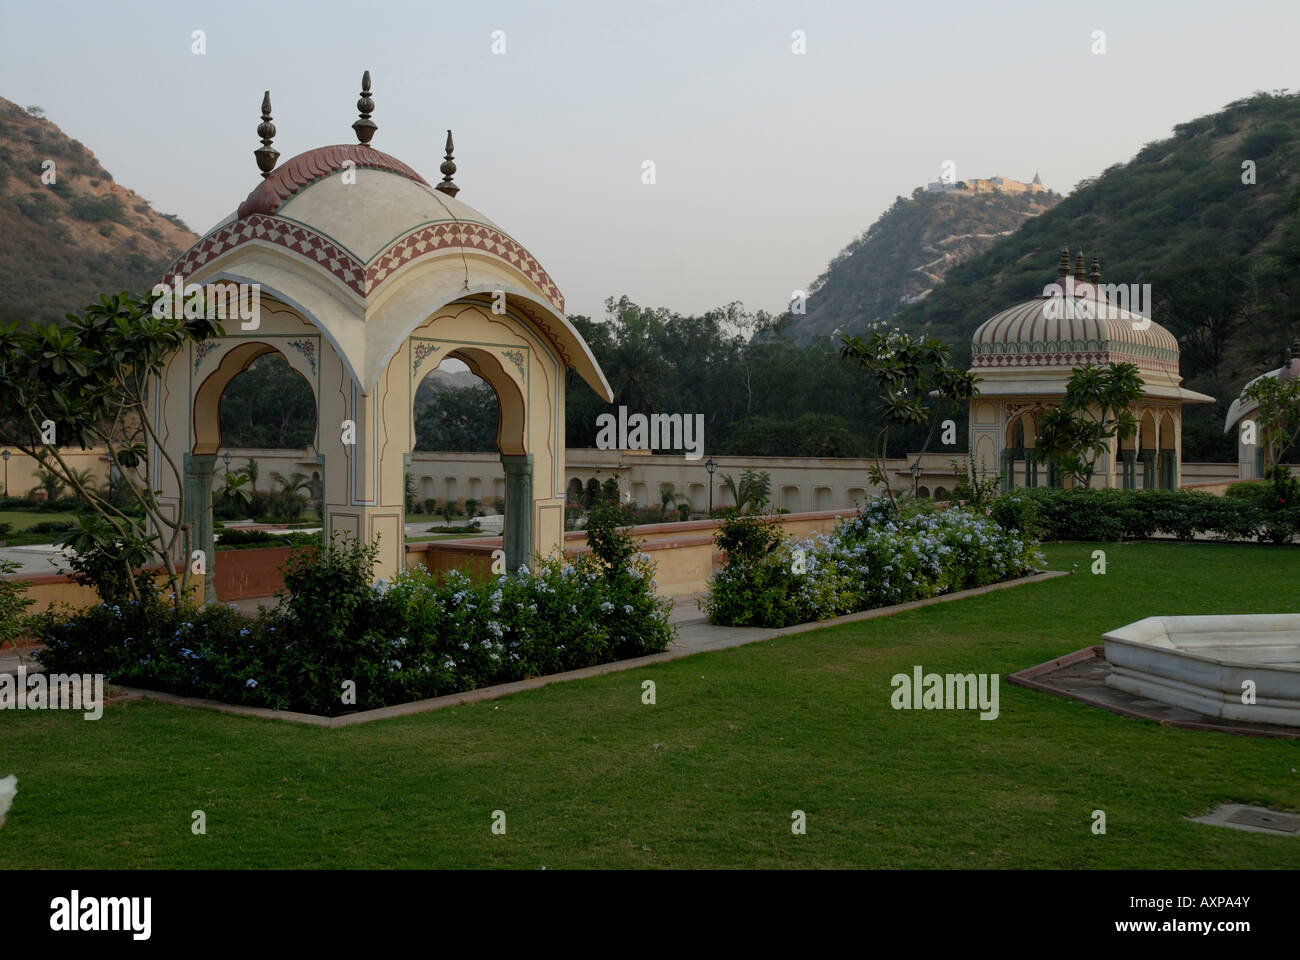 Gazebo dans le 18e siècle Vidyadhar jardin près de Jaipur Rajasthan Inde Banque D'Images